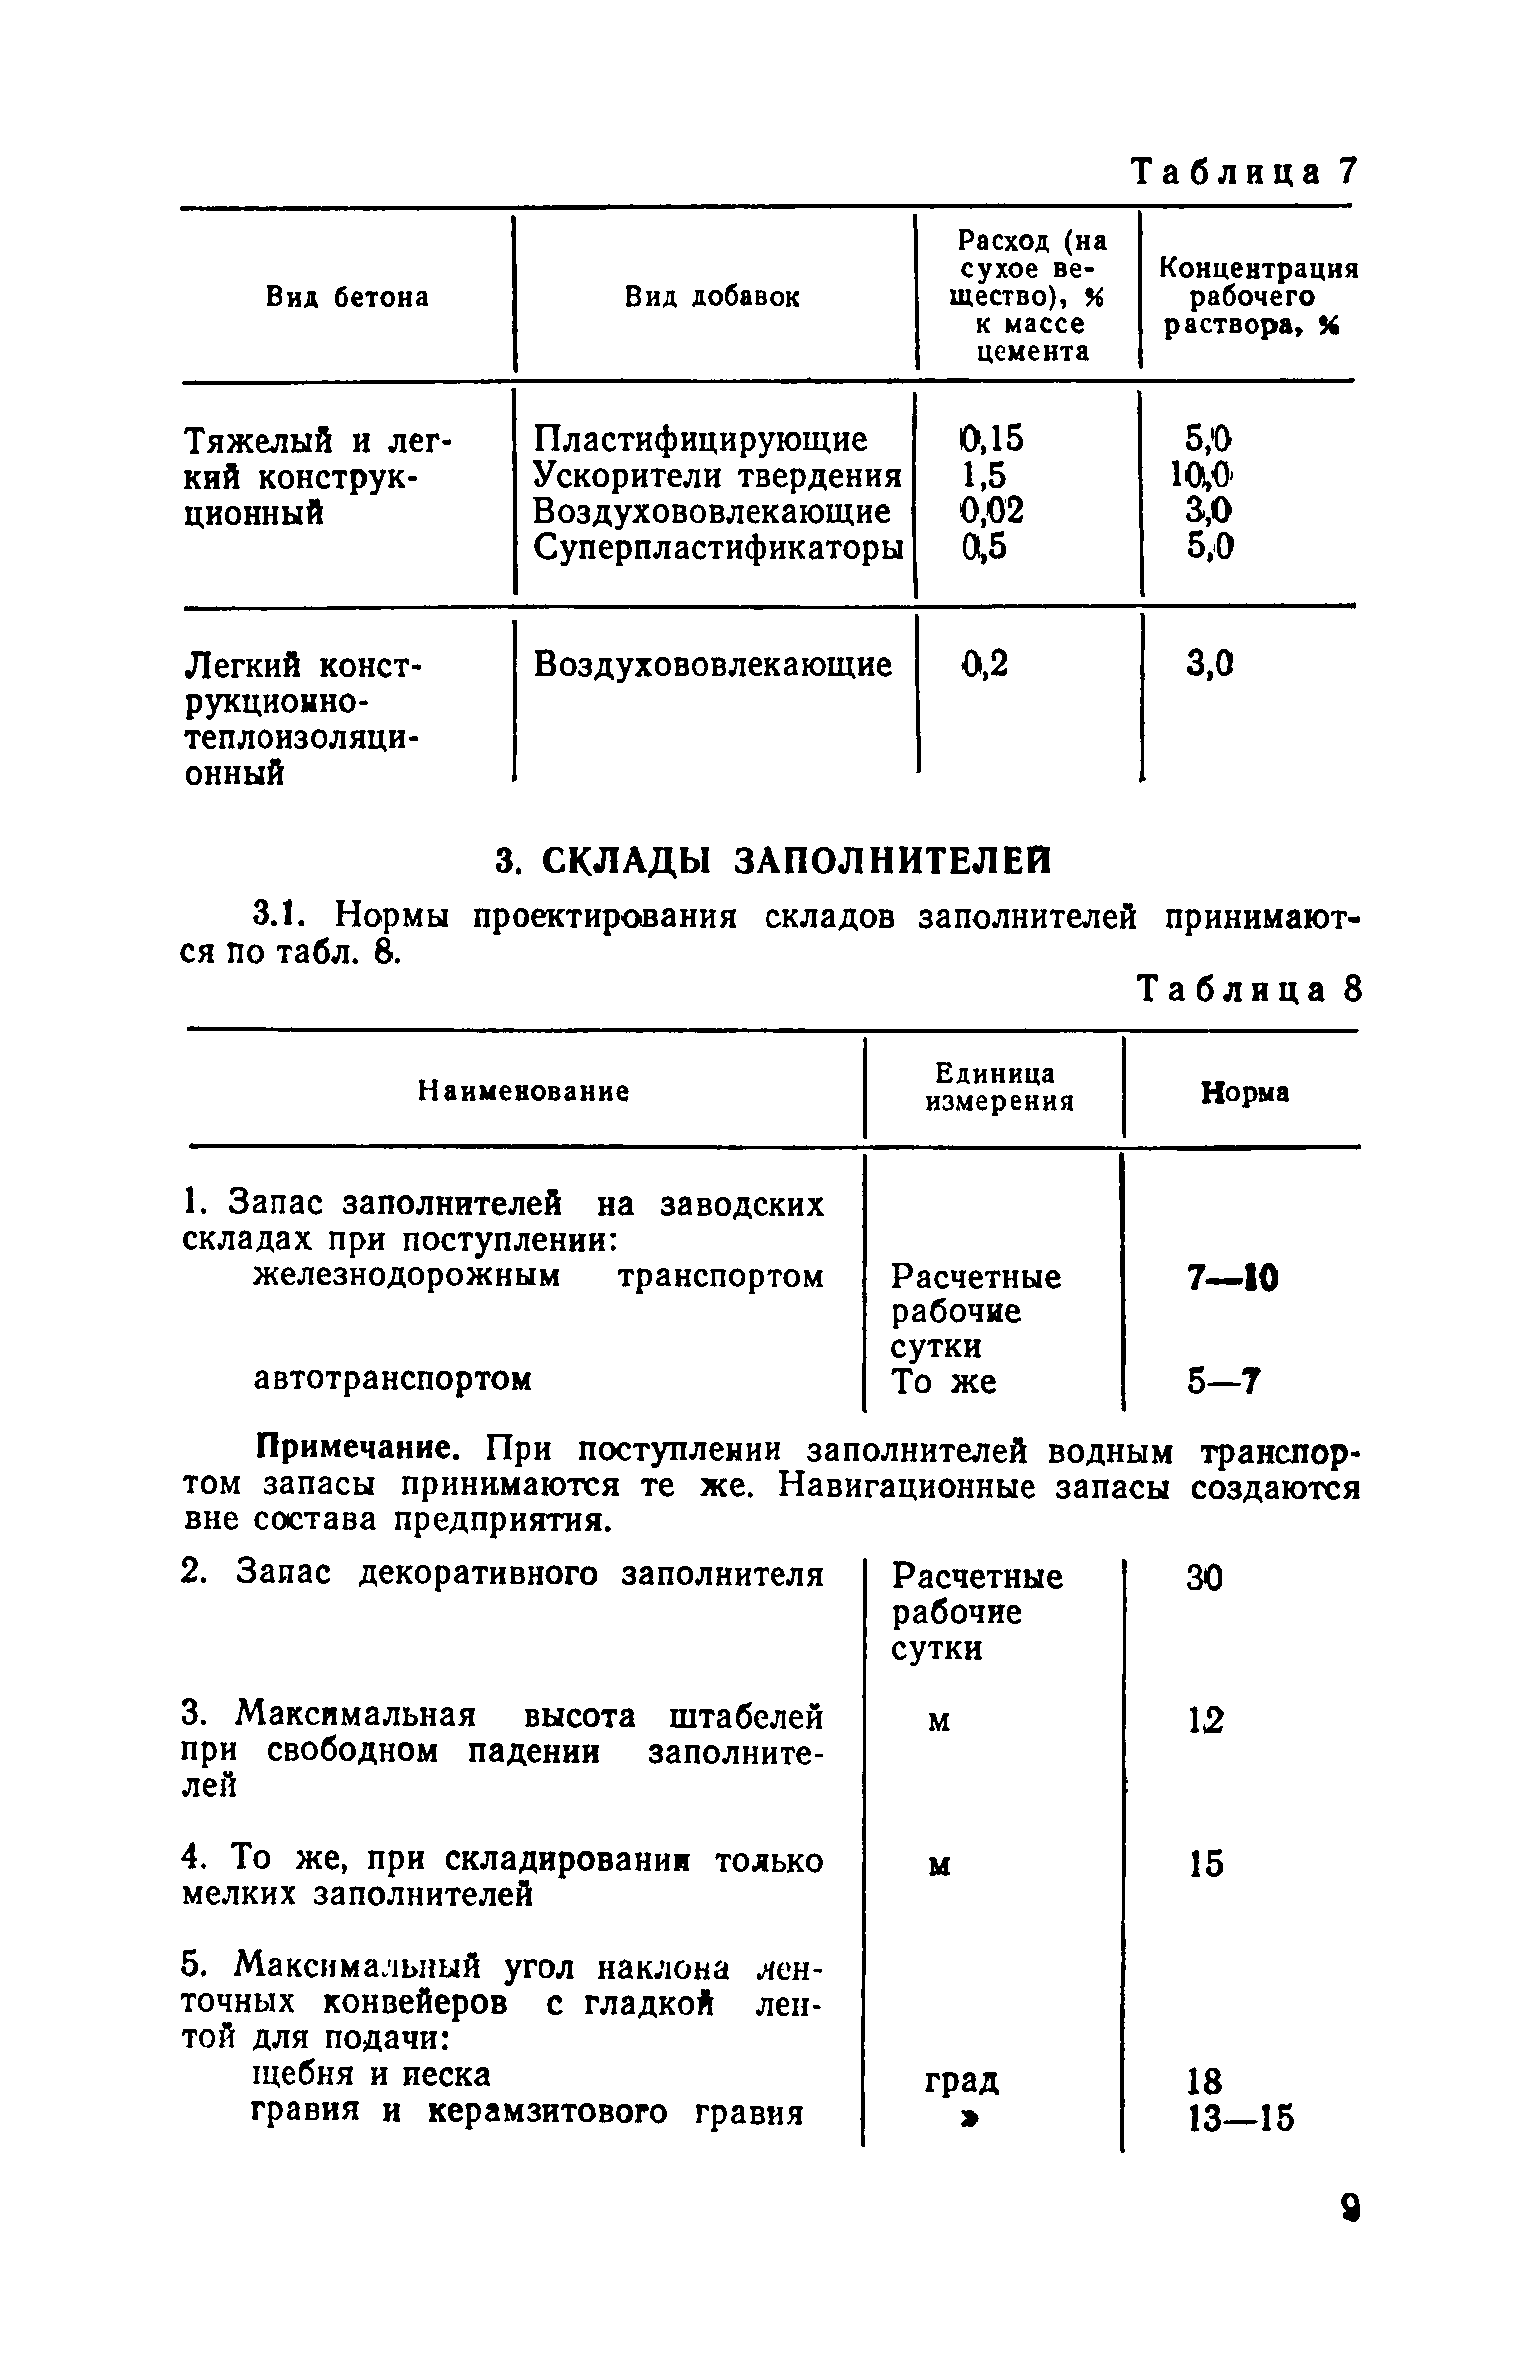 ОНТП 7-80